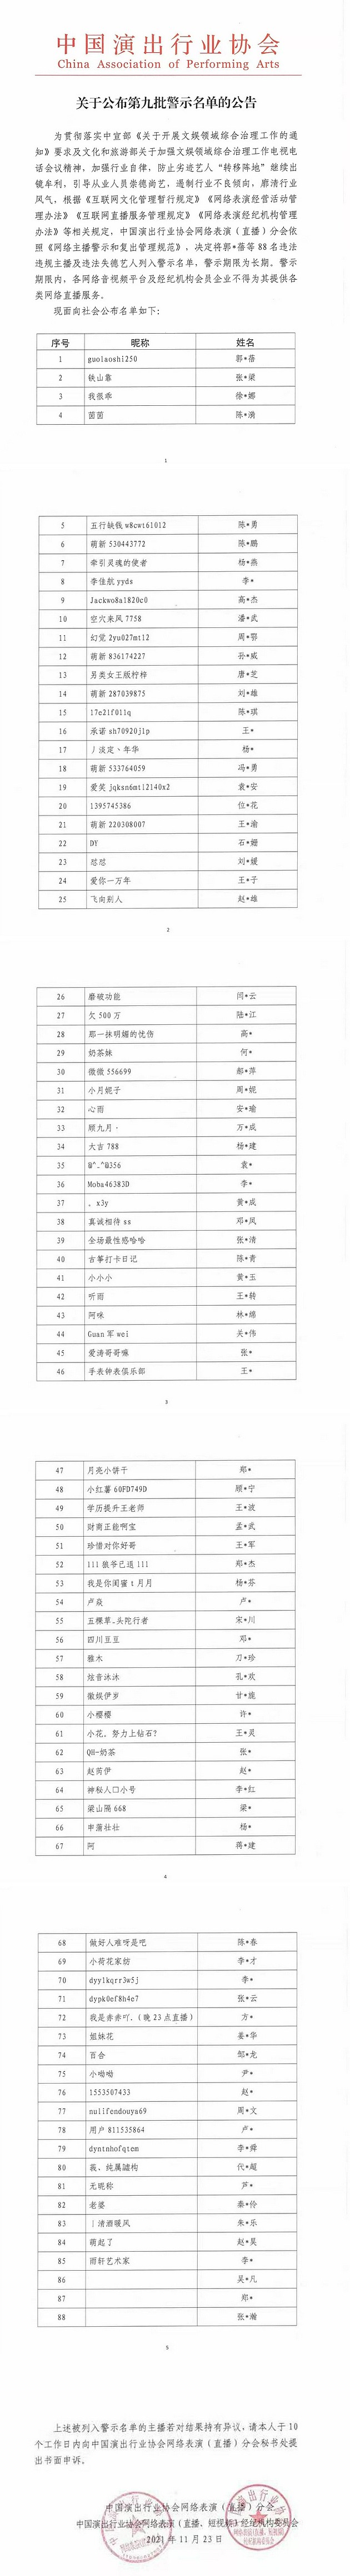 第九批网络主播警示名单公布 吴亦凡、郑爽等88人在列 - 1